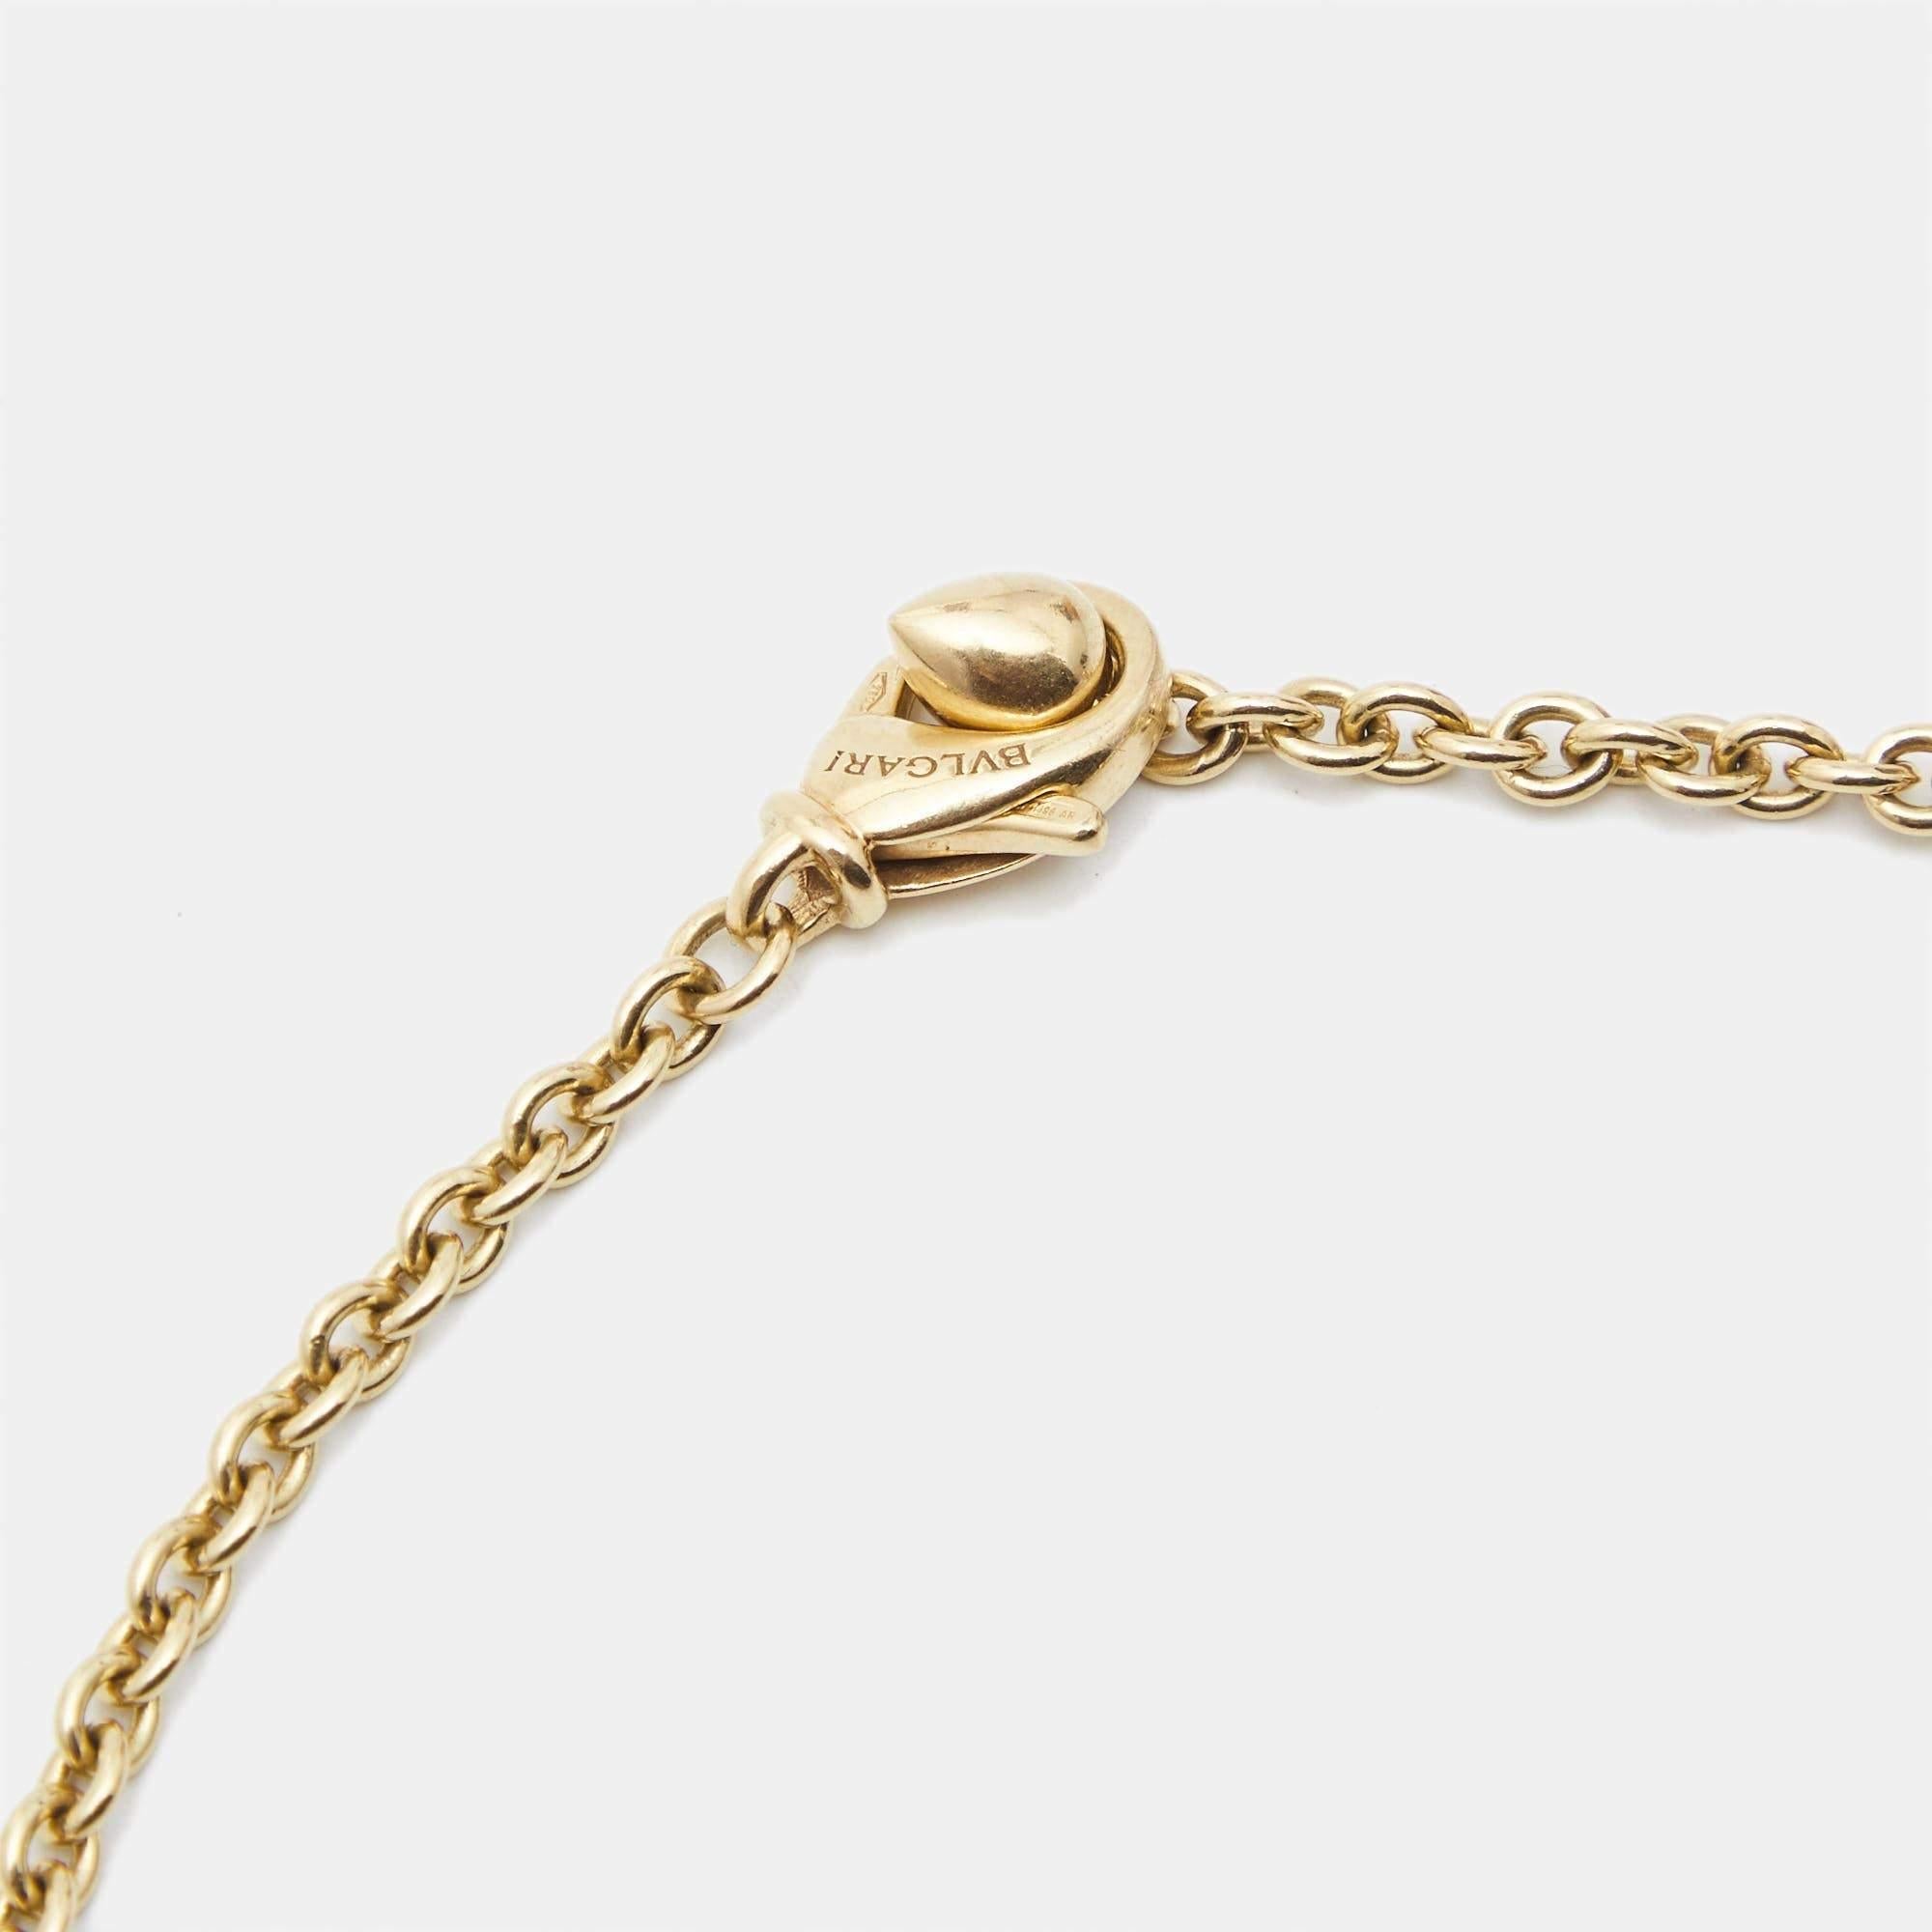 Aesthetic Movement Bvlgari Catene 18k Yellow Gold Chain Necklace